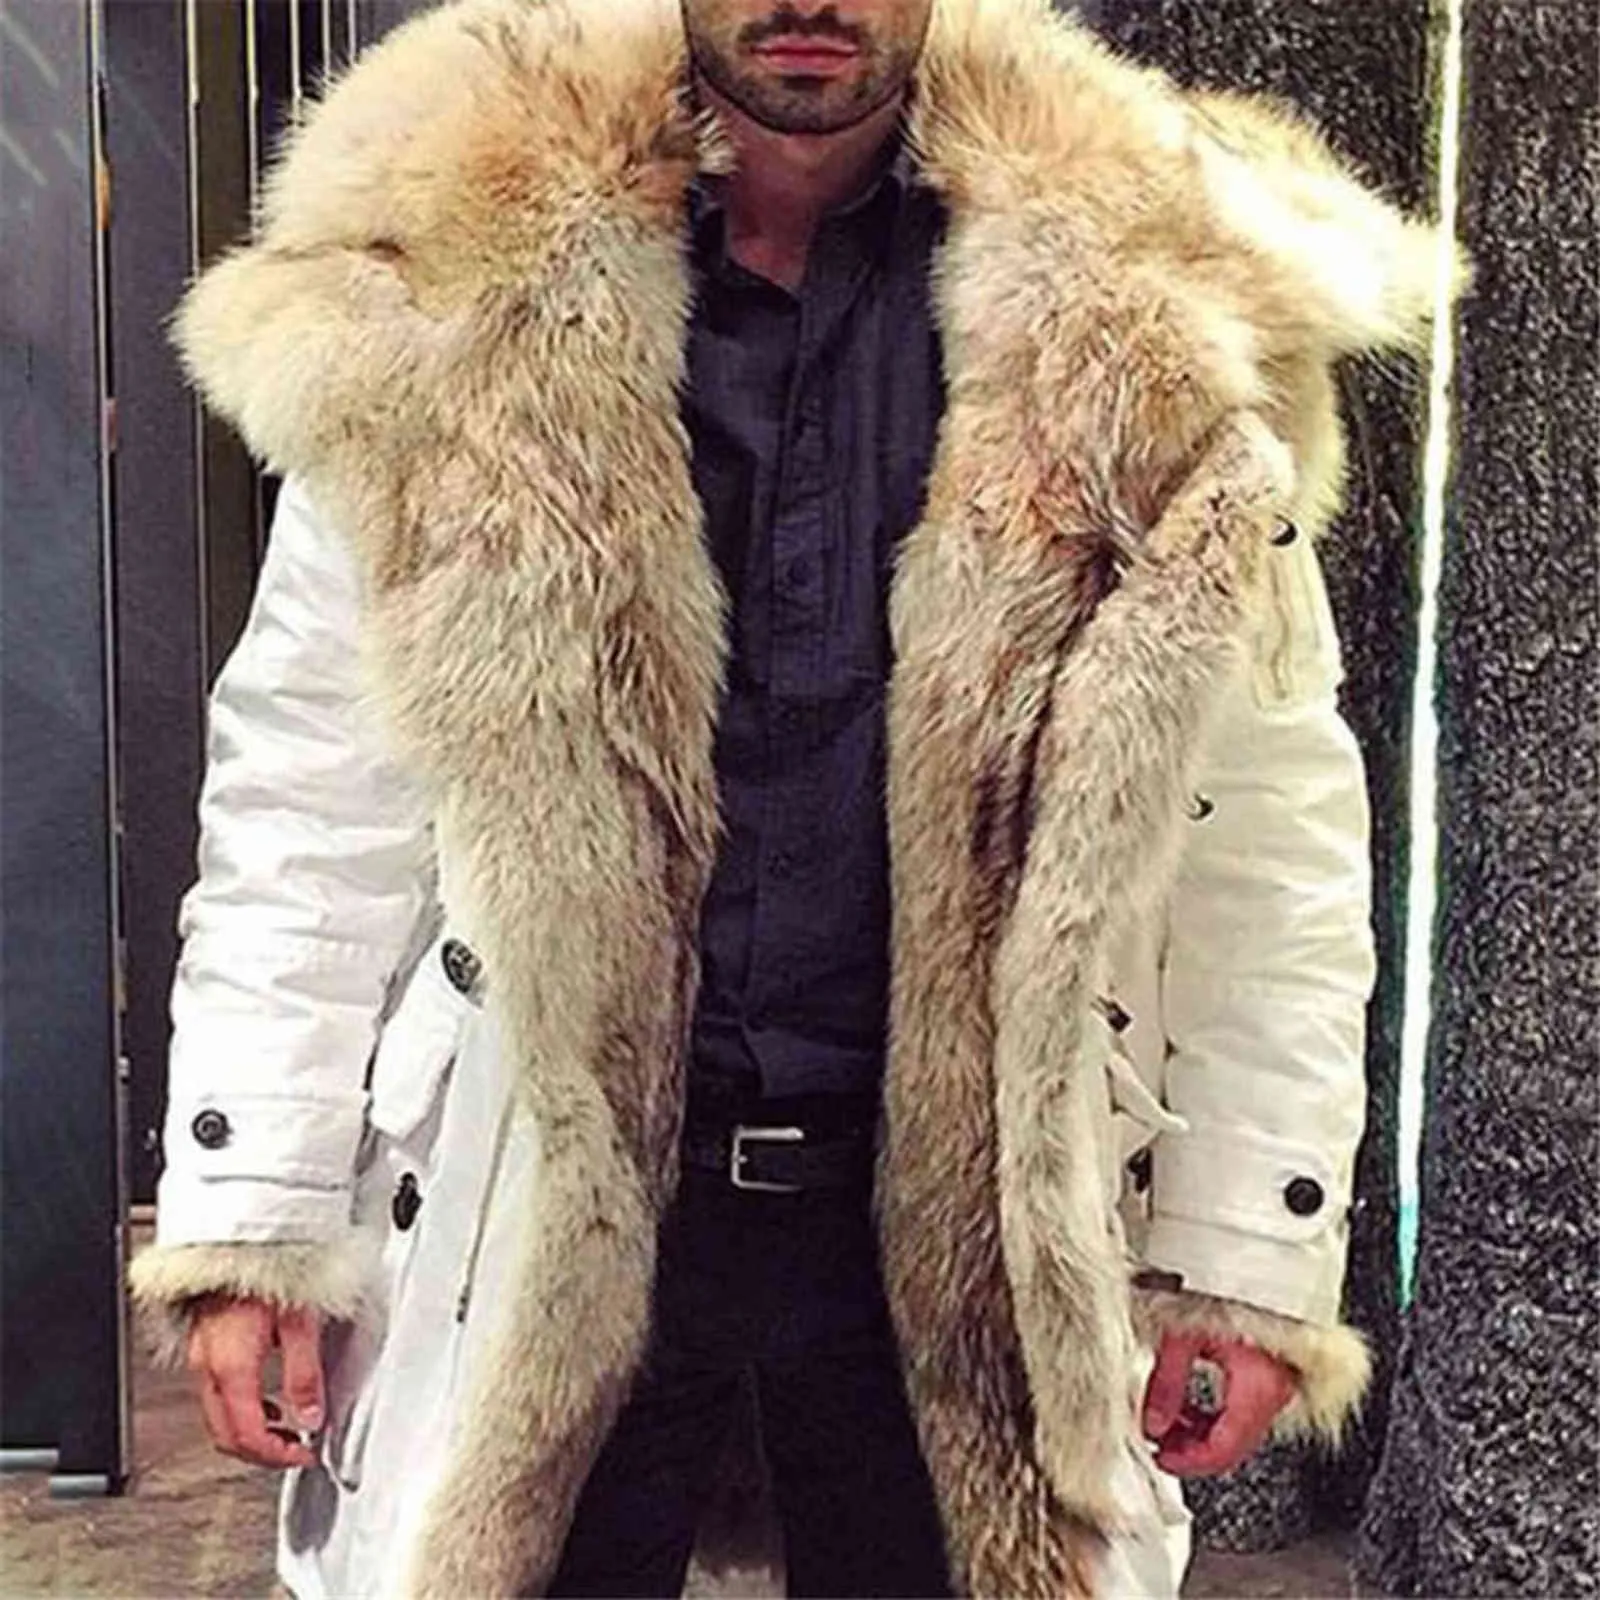 Пуховик мужские зимние длинные пальто белые толстые одежды кардиган мужской одежды держать тепло Y1103